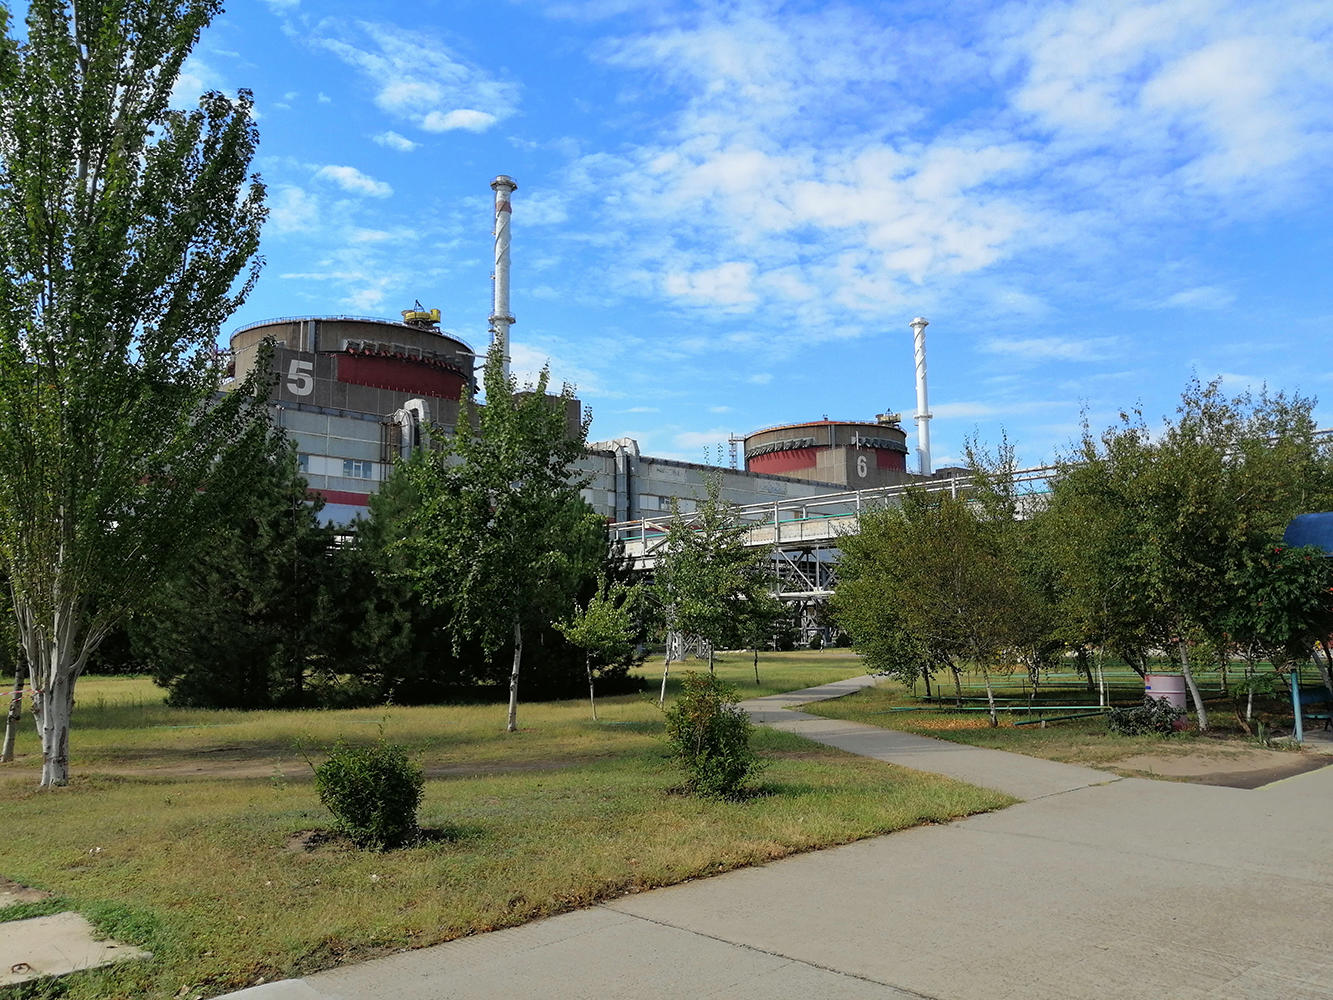 Запорожскую АЭС посетил глава МАГАТЭ: фото станции изнутри